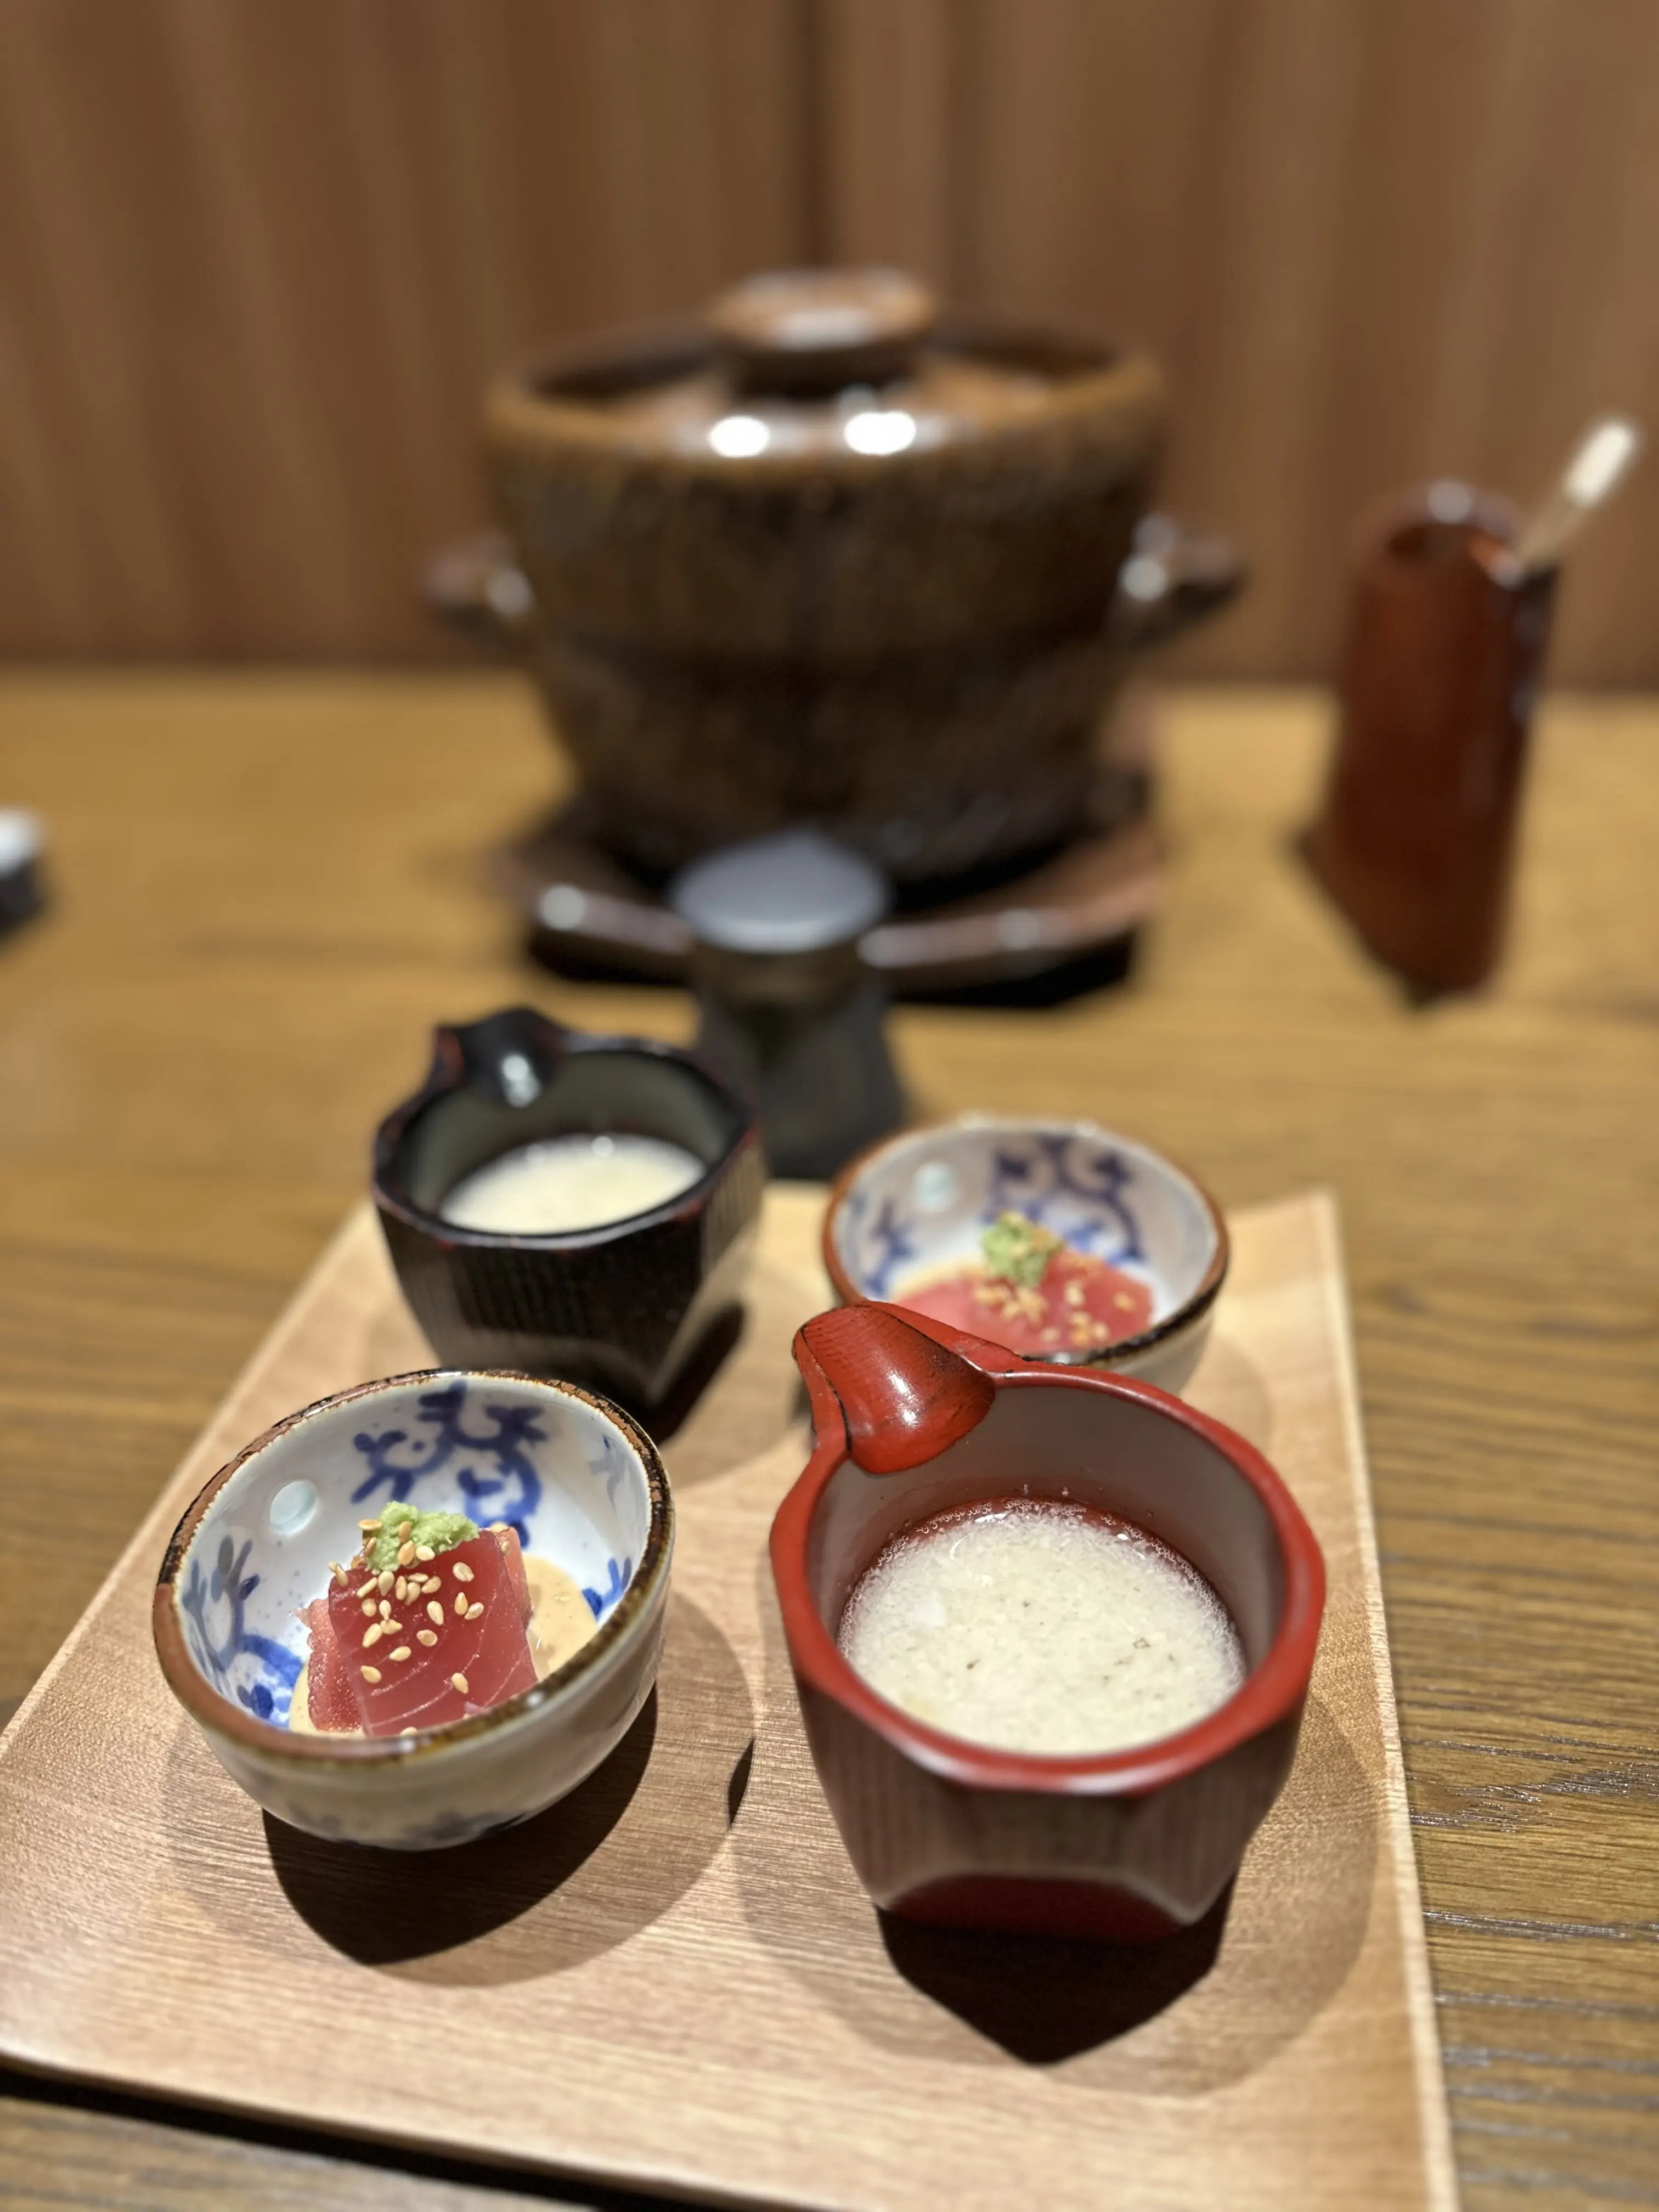 1月開業した『ふふ箱根』で、日本料理を堪能【箱根旅行①】_1_14